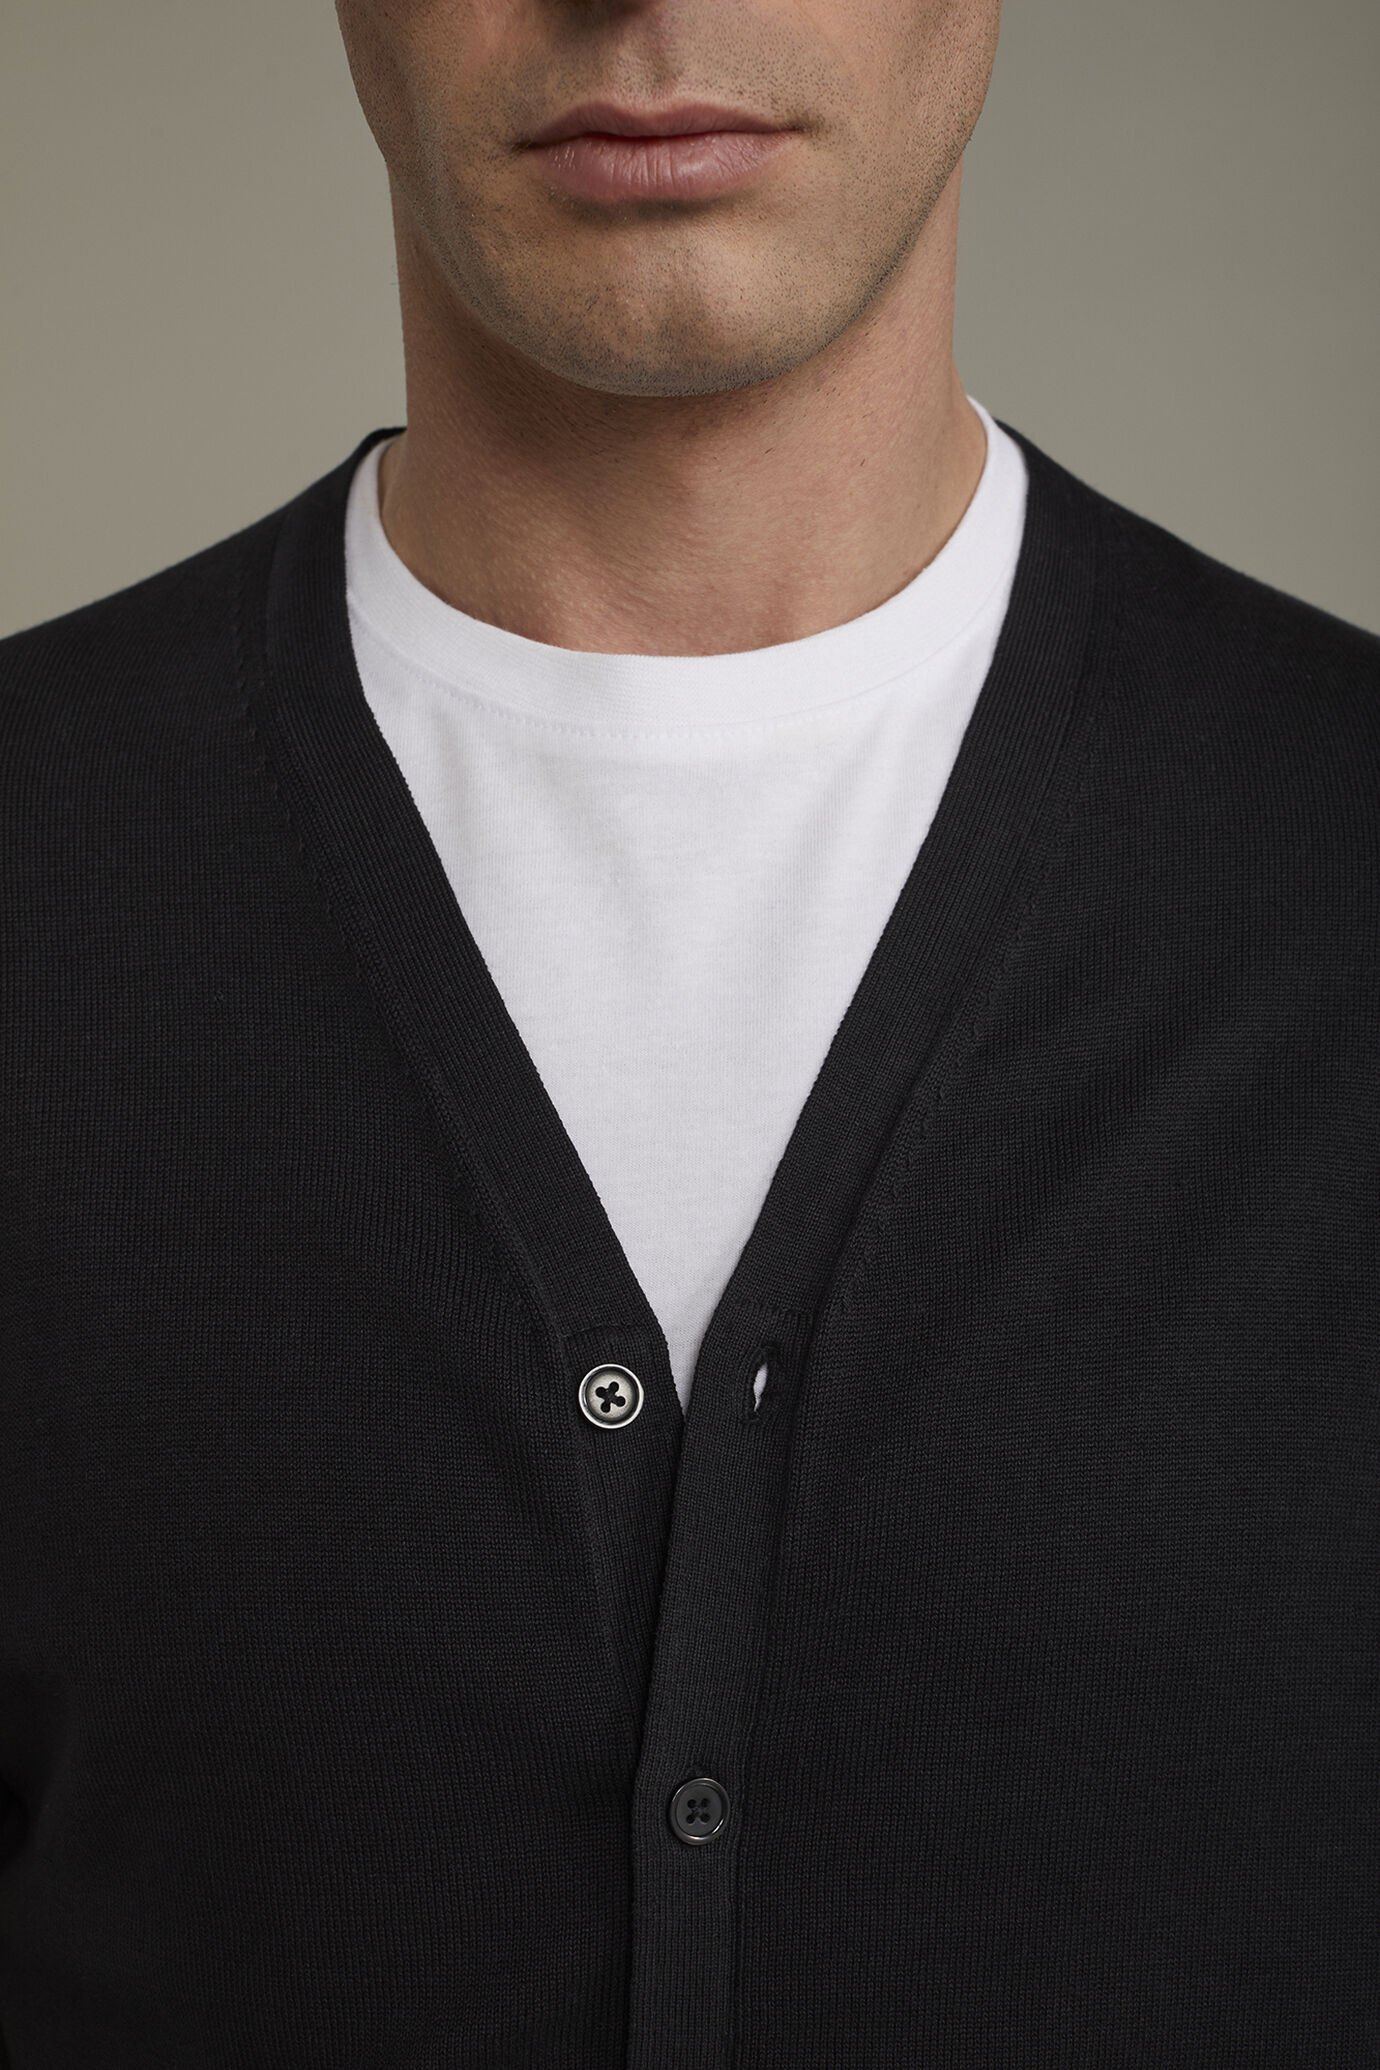 Men's sweater V collar 100% cotton regular fit image number 3